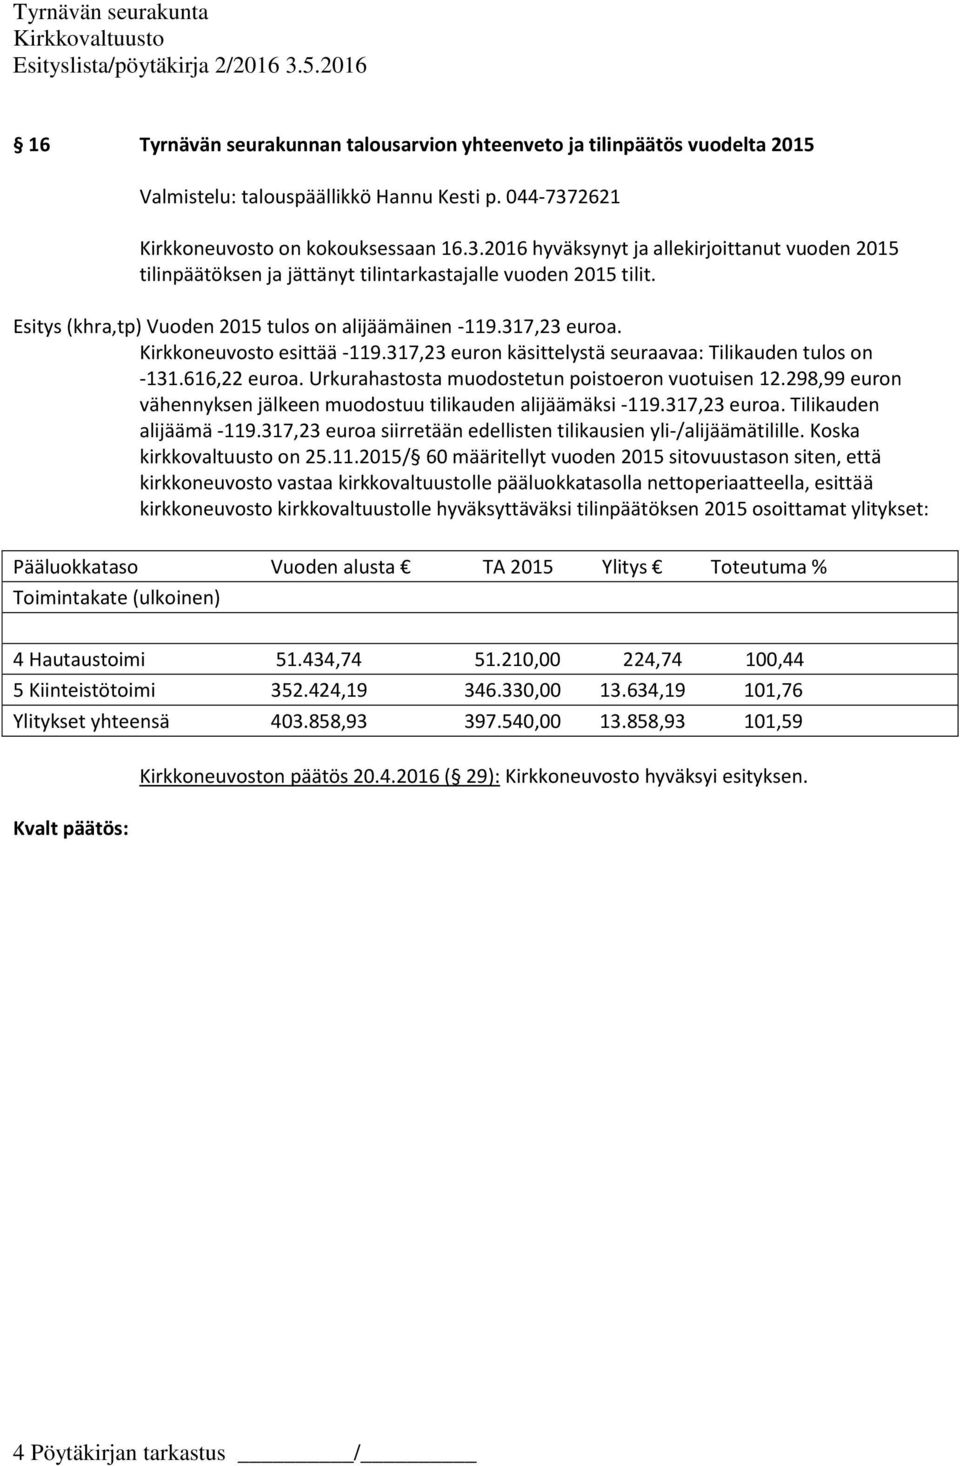 Esitys (khra,tp) Vuoden 2015 tulos on alijäämäinen -119.317,23 euroa. Kirkkoneuvosto esittää -119.317,23 euron käsittelystä seuraavaa: Tilikauden tulos on -131.616,22 euroa.